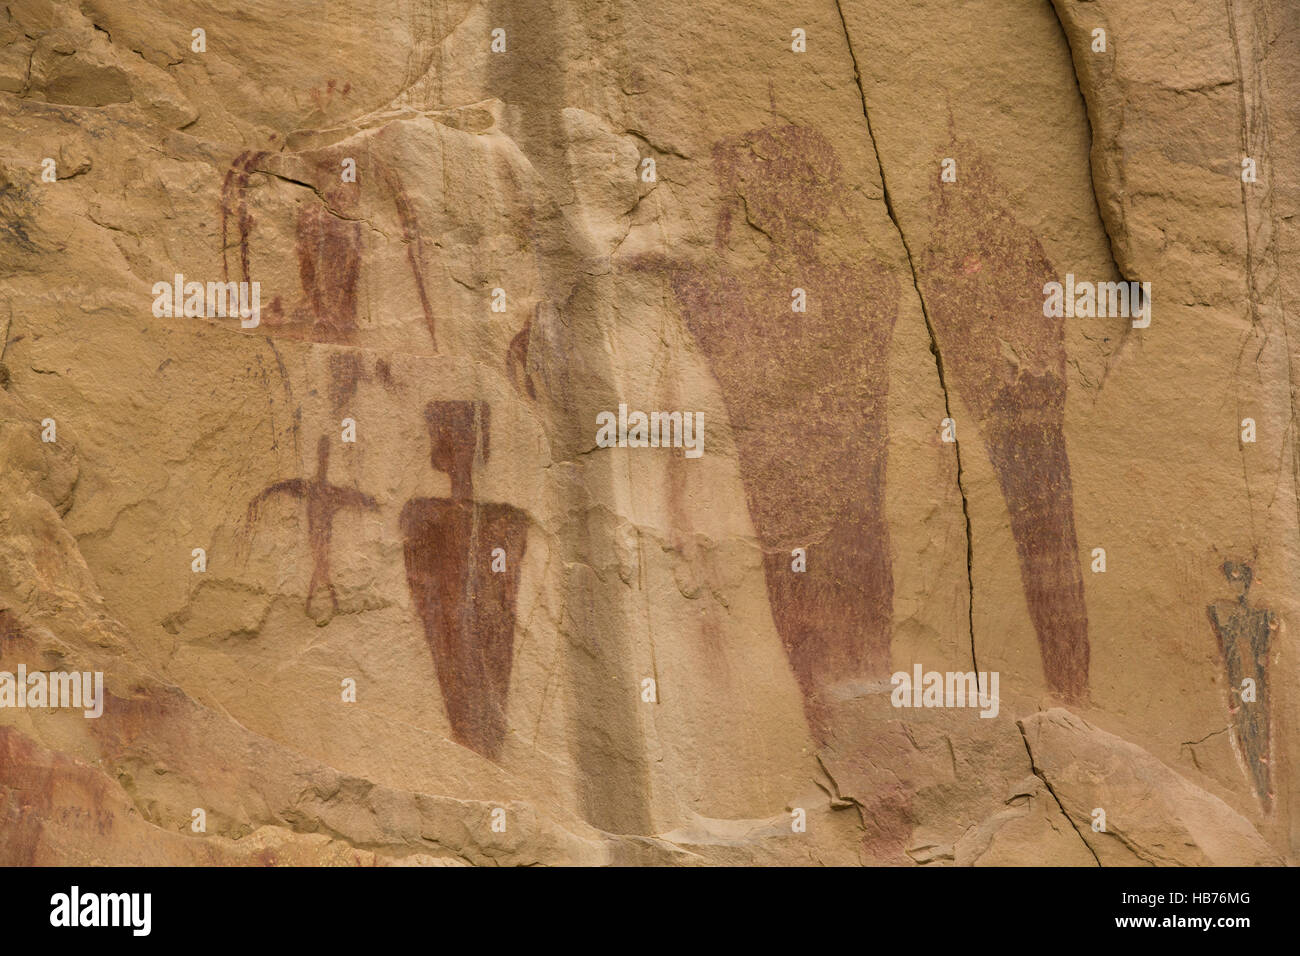 Forme antropomorfe, pittogrammi, canyon di barriera corallina Stile, 6000 BC a 100 BC, Sego Canyon dello Utah, Stati Uniti d'America Foto Stock